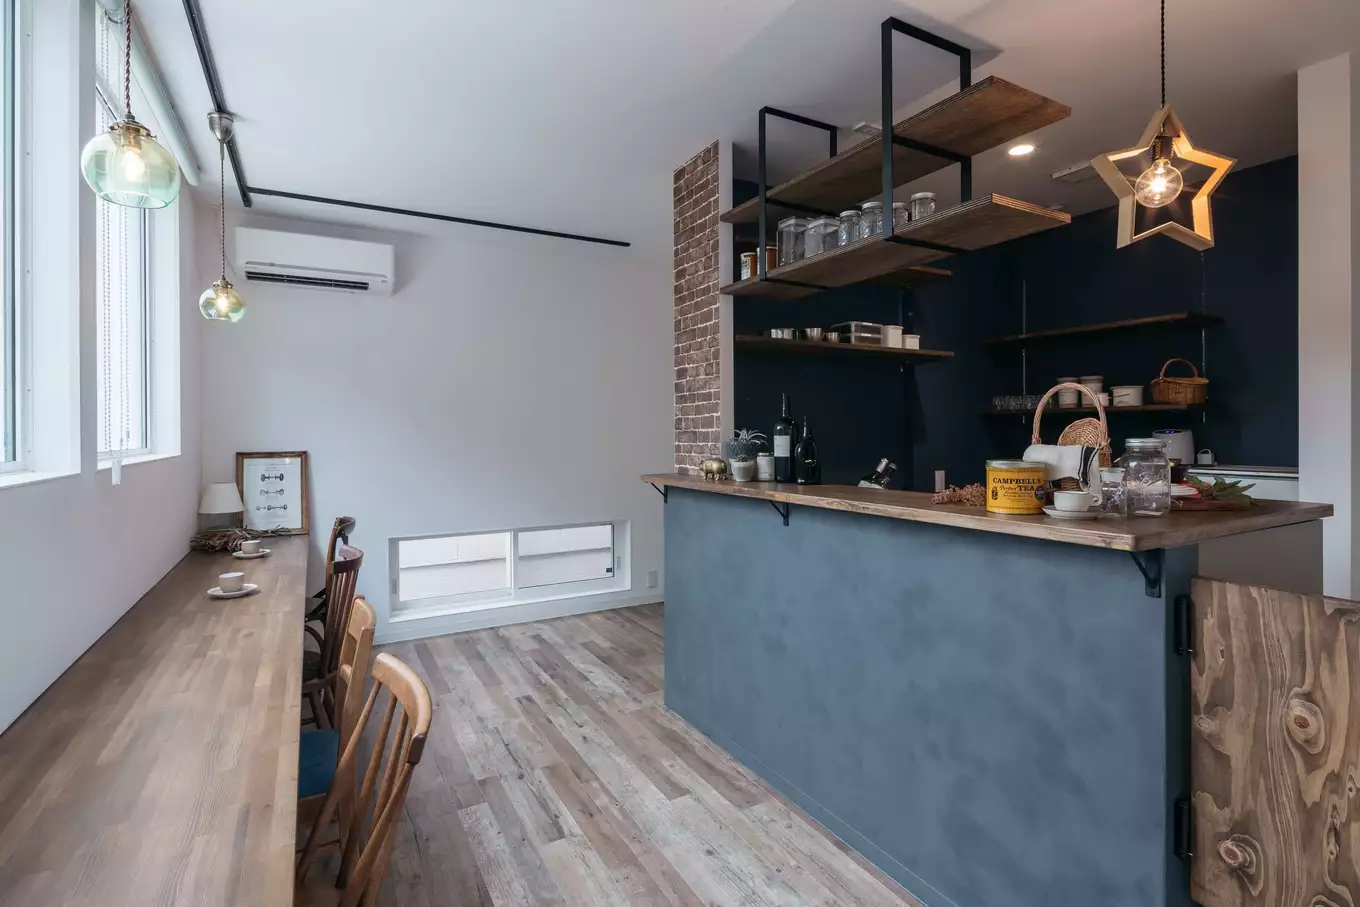 腰壁がグレーのカフェのようなおしゃれな木目調のキッチンと窓際のカウンター